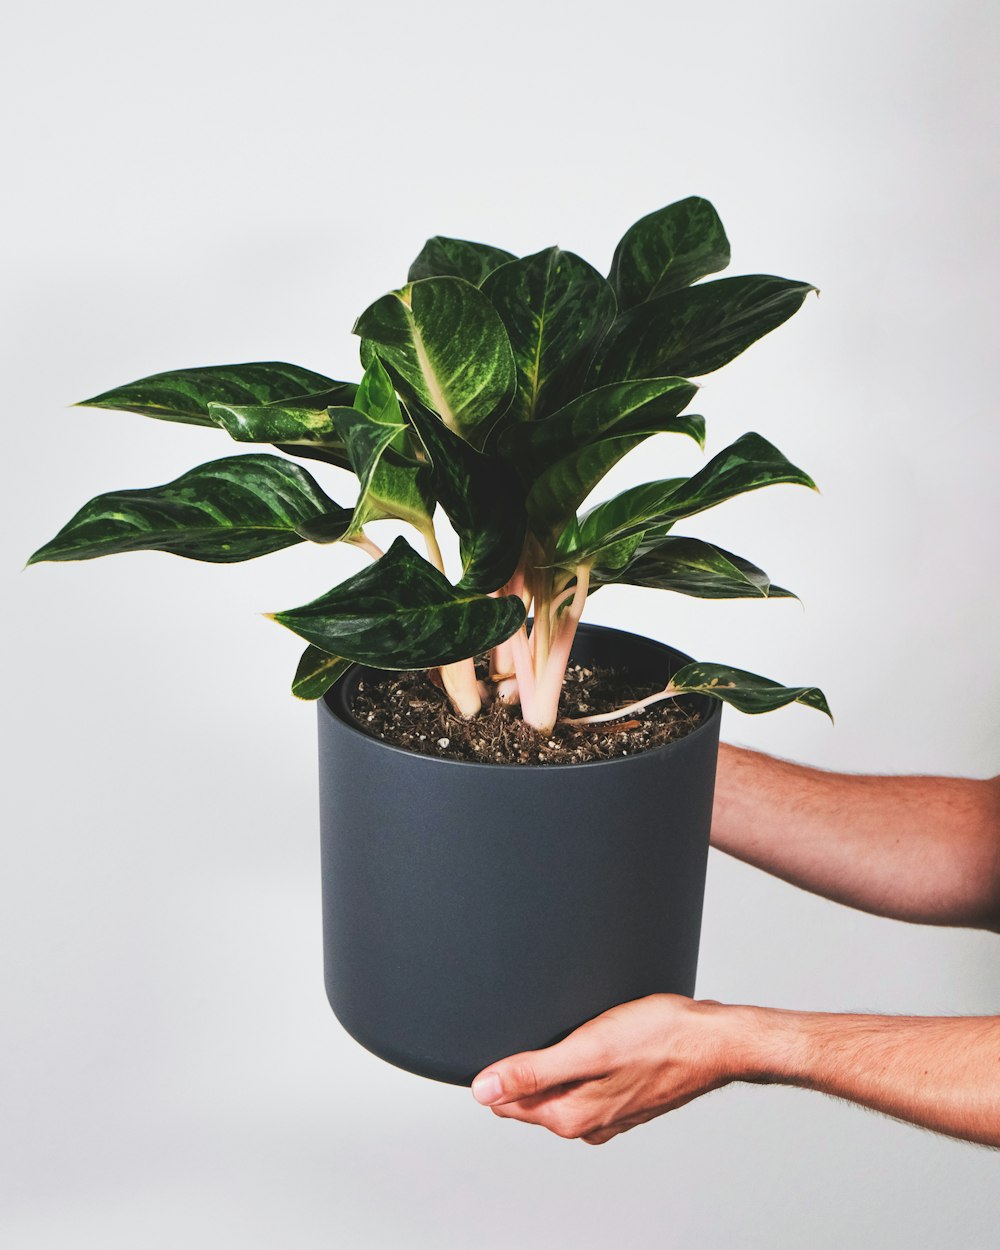 una persona sosteniendo una planta en maceta en la mano